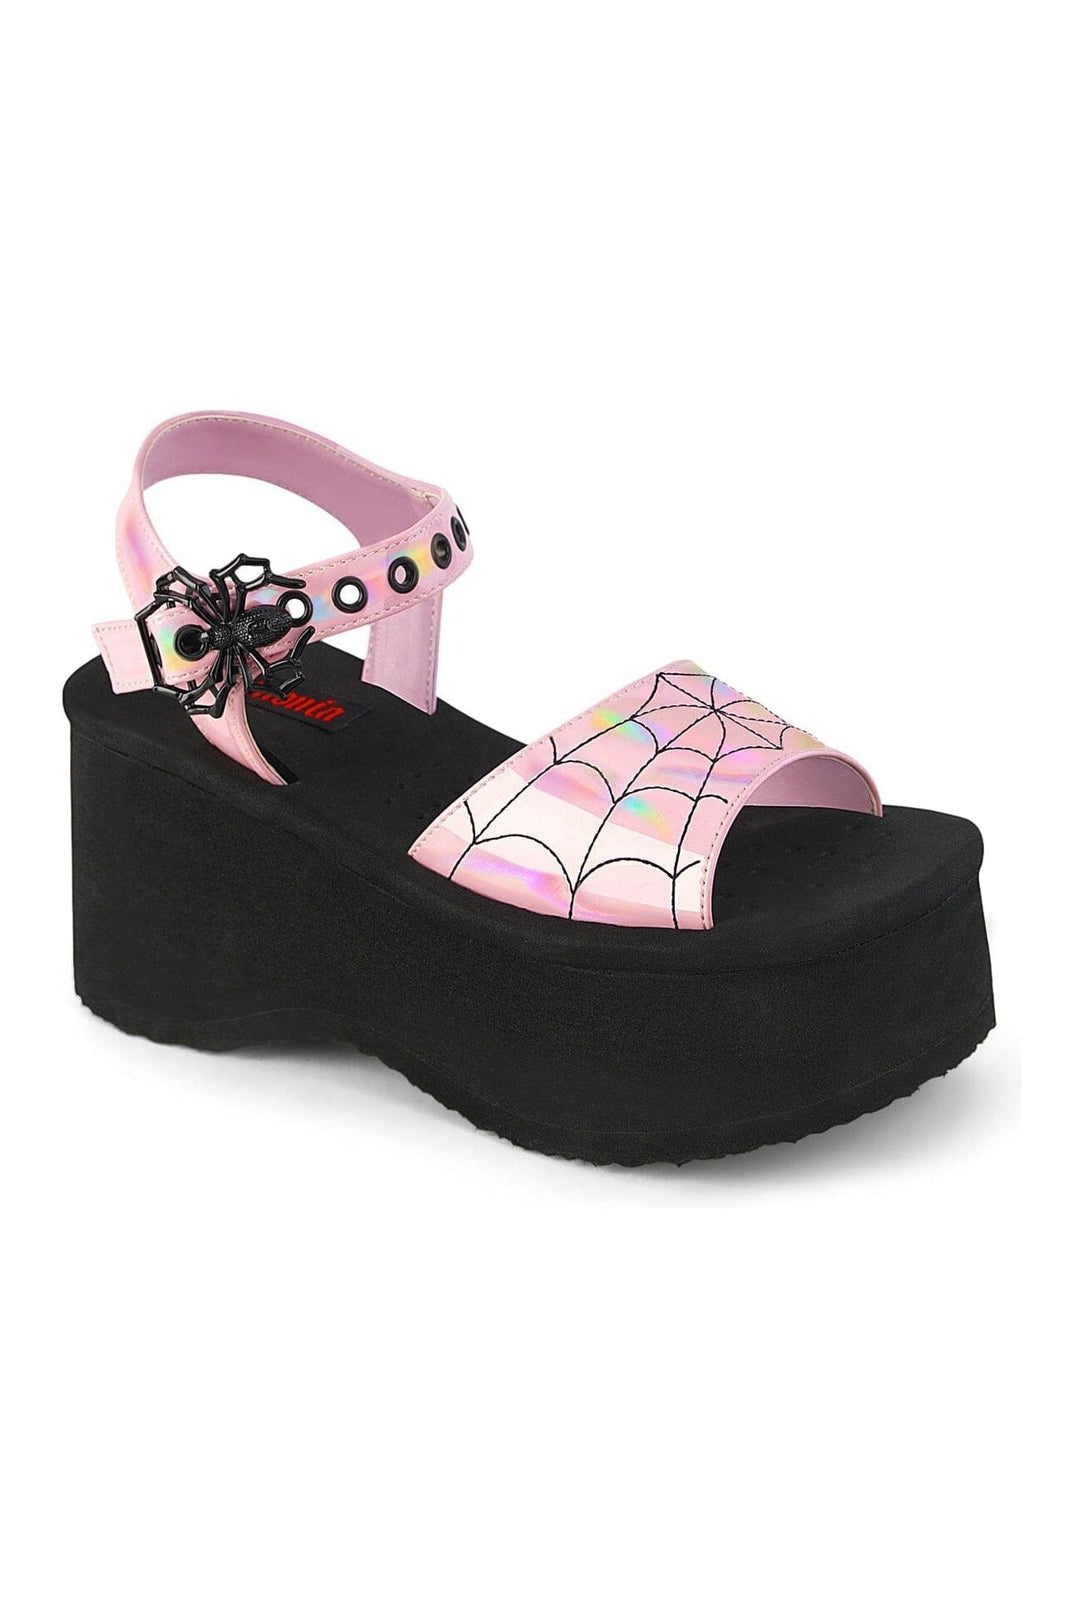 FUNN-10 Pink Hologram Patent Sandal-Sandals-Demonia-Pink-10-Hologram Patent-SEXYSHOES.COM